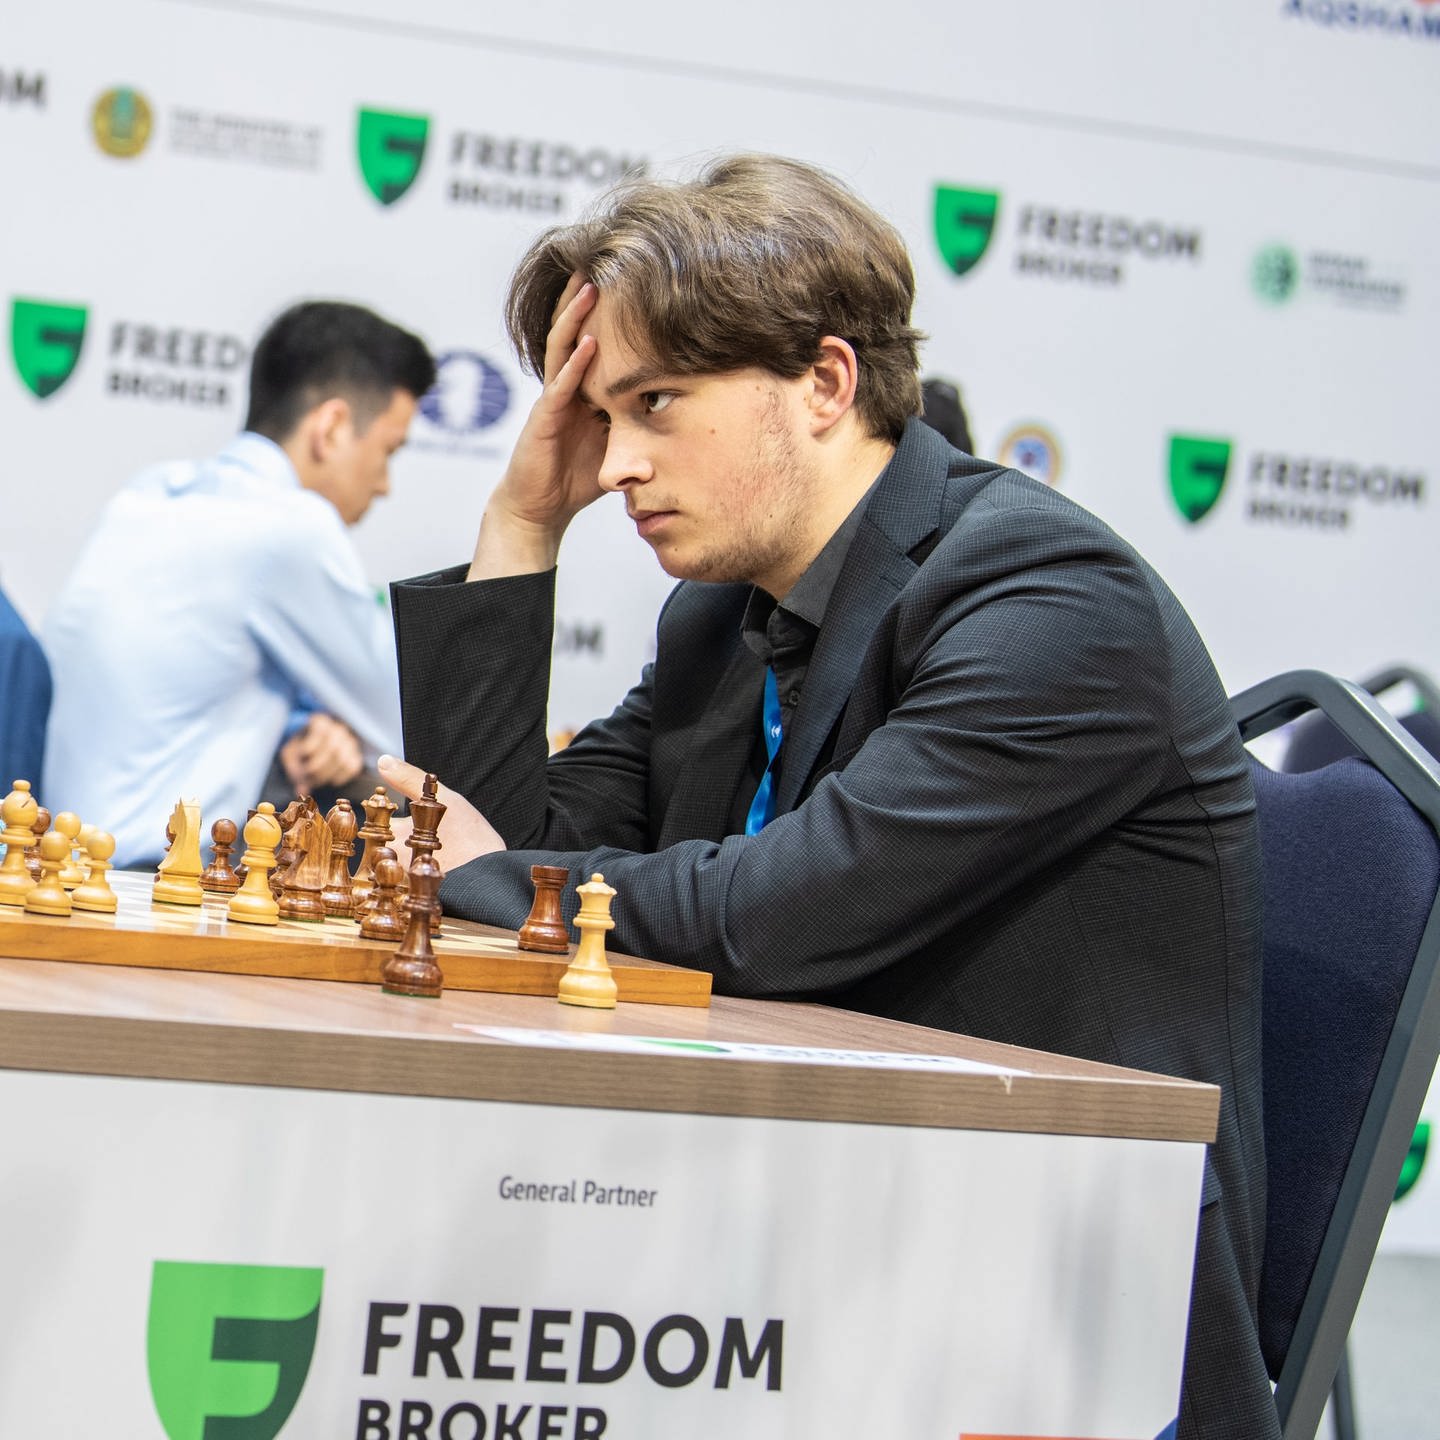 Schach Vincent Keymer schlägt Magnus Carlsen, Verein freut sich